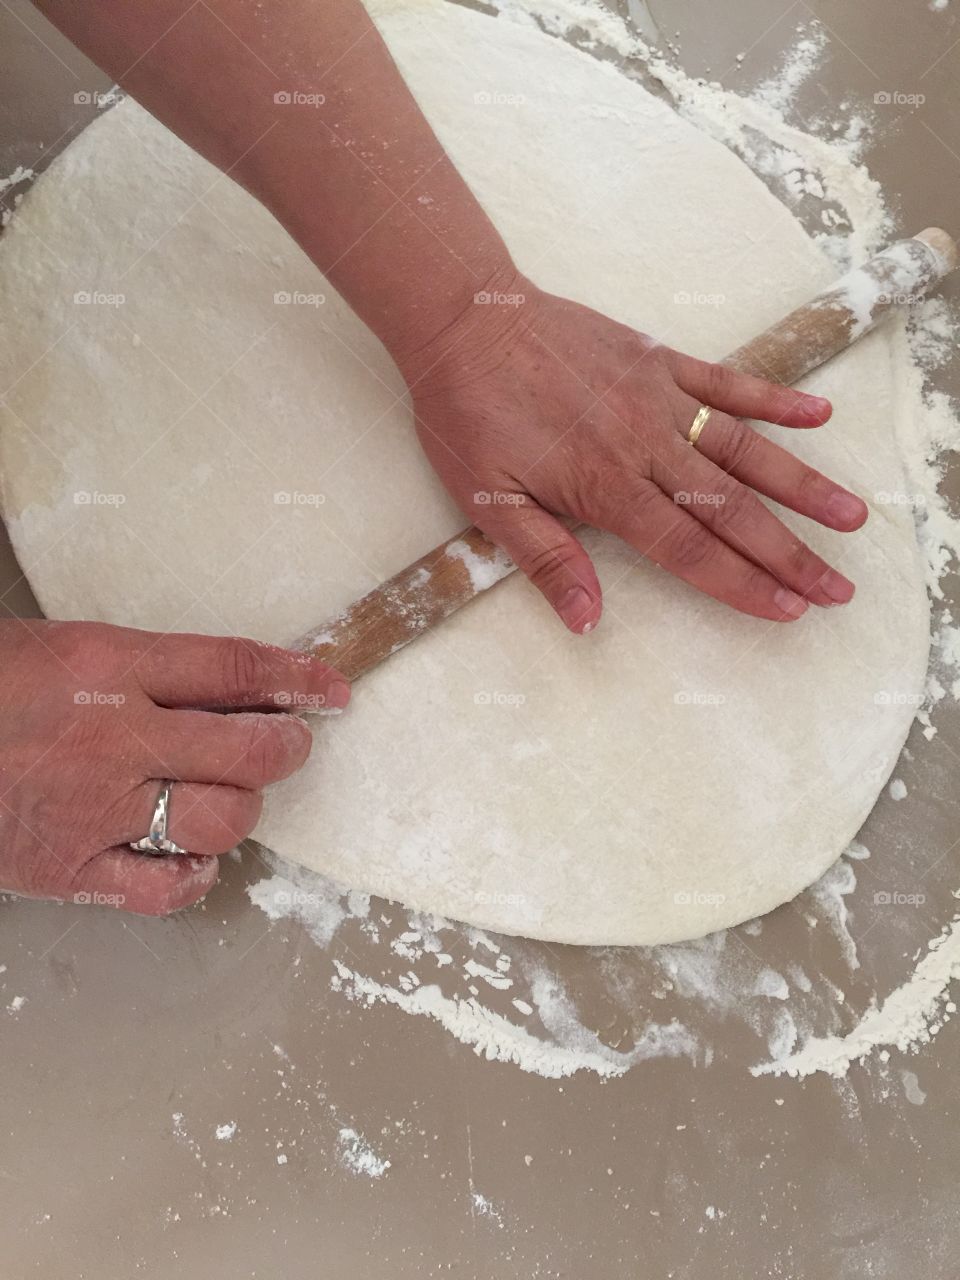 Spread the dough 